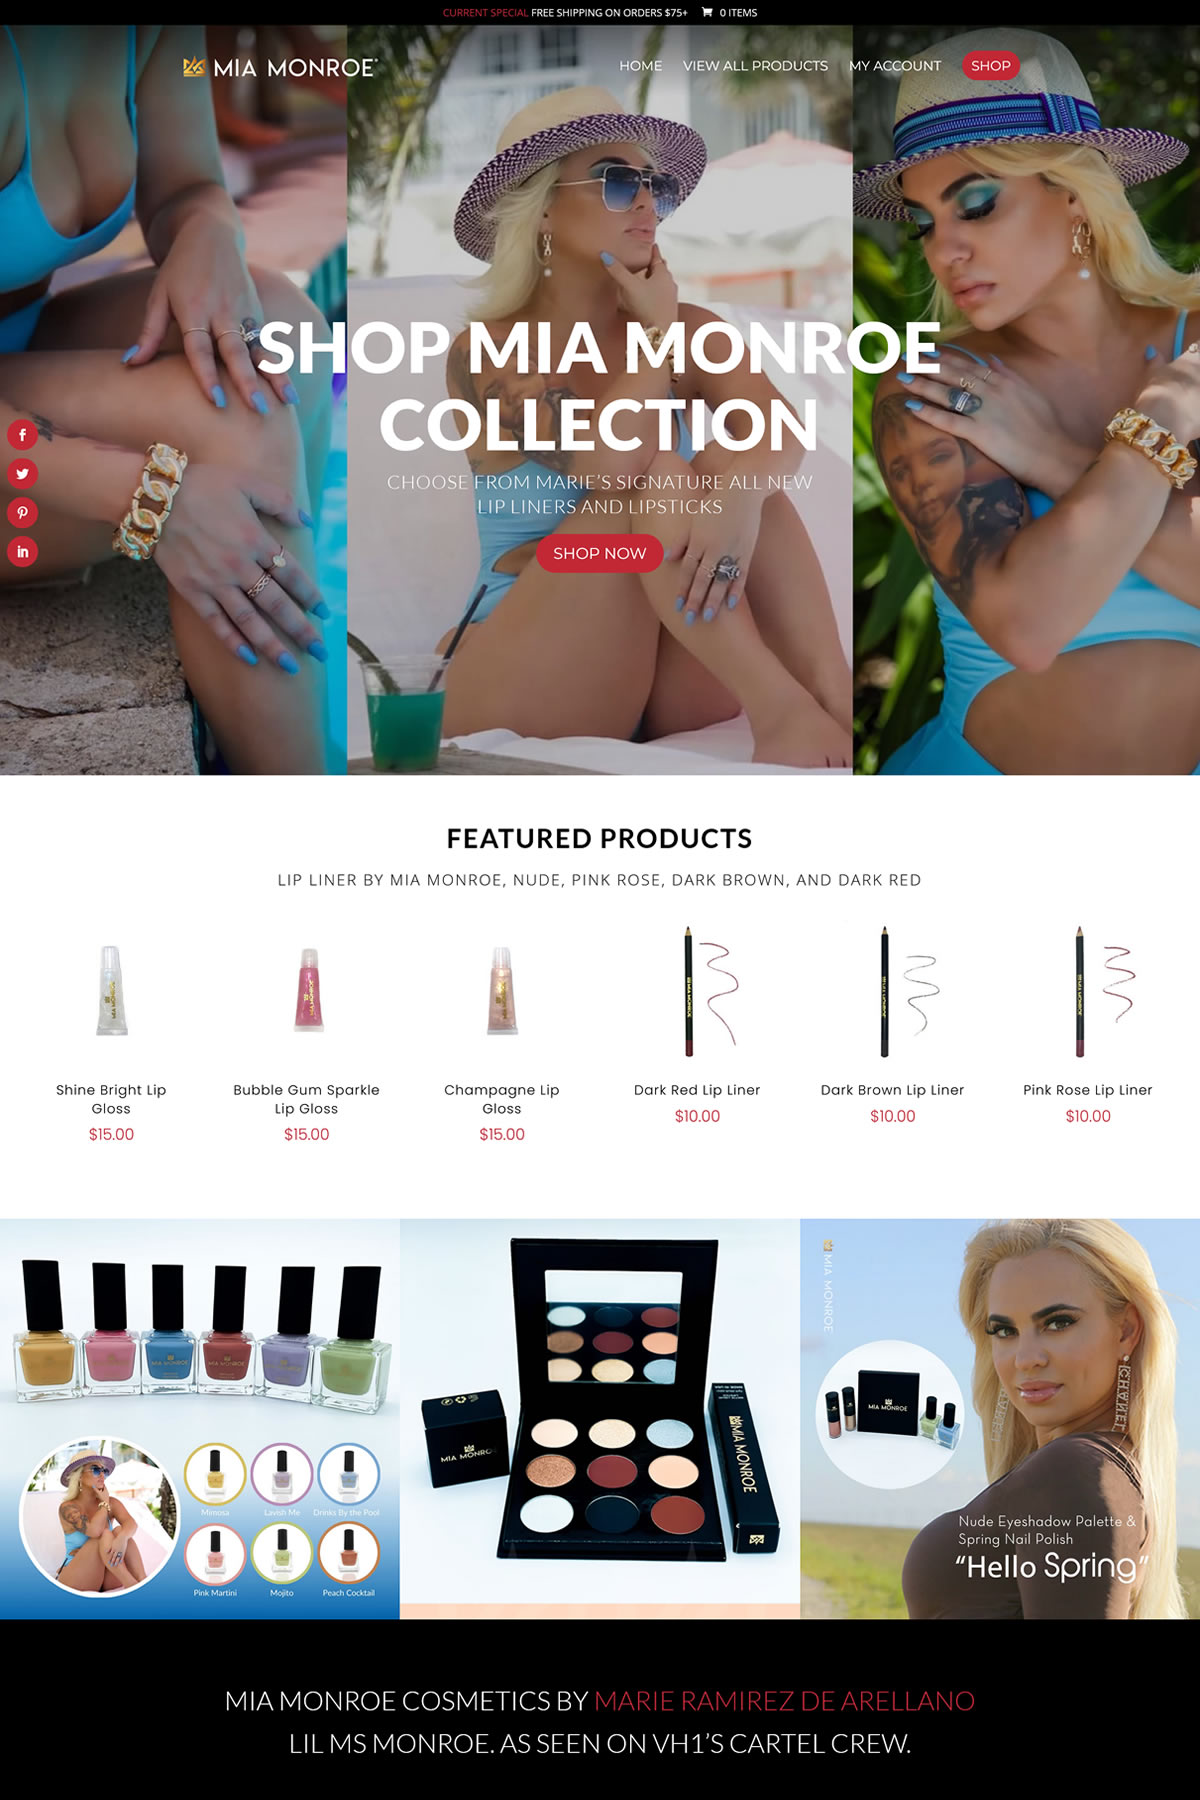 mia-monroe-ecommerce-gohooper-web-design-company